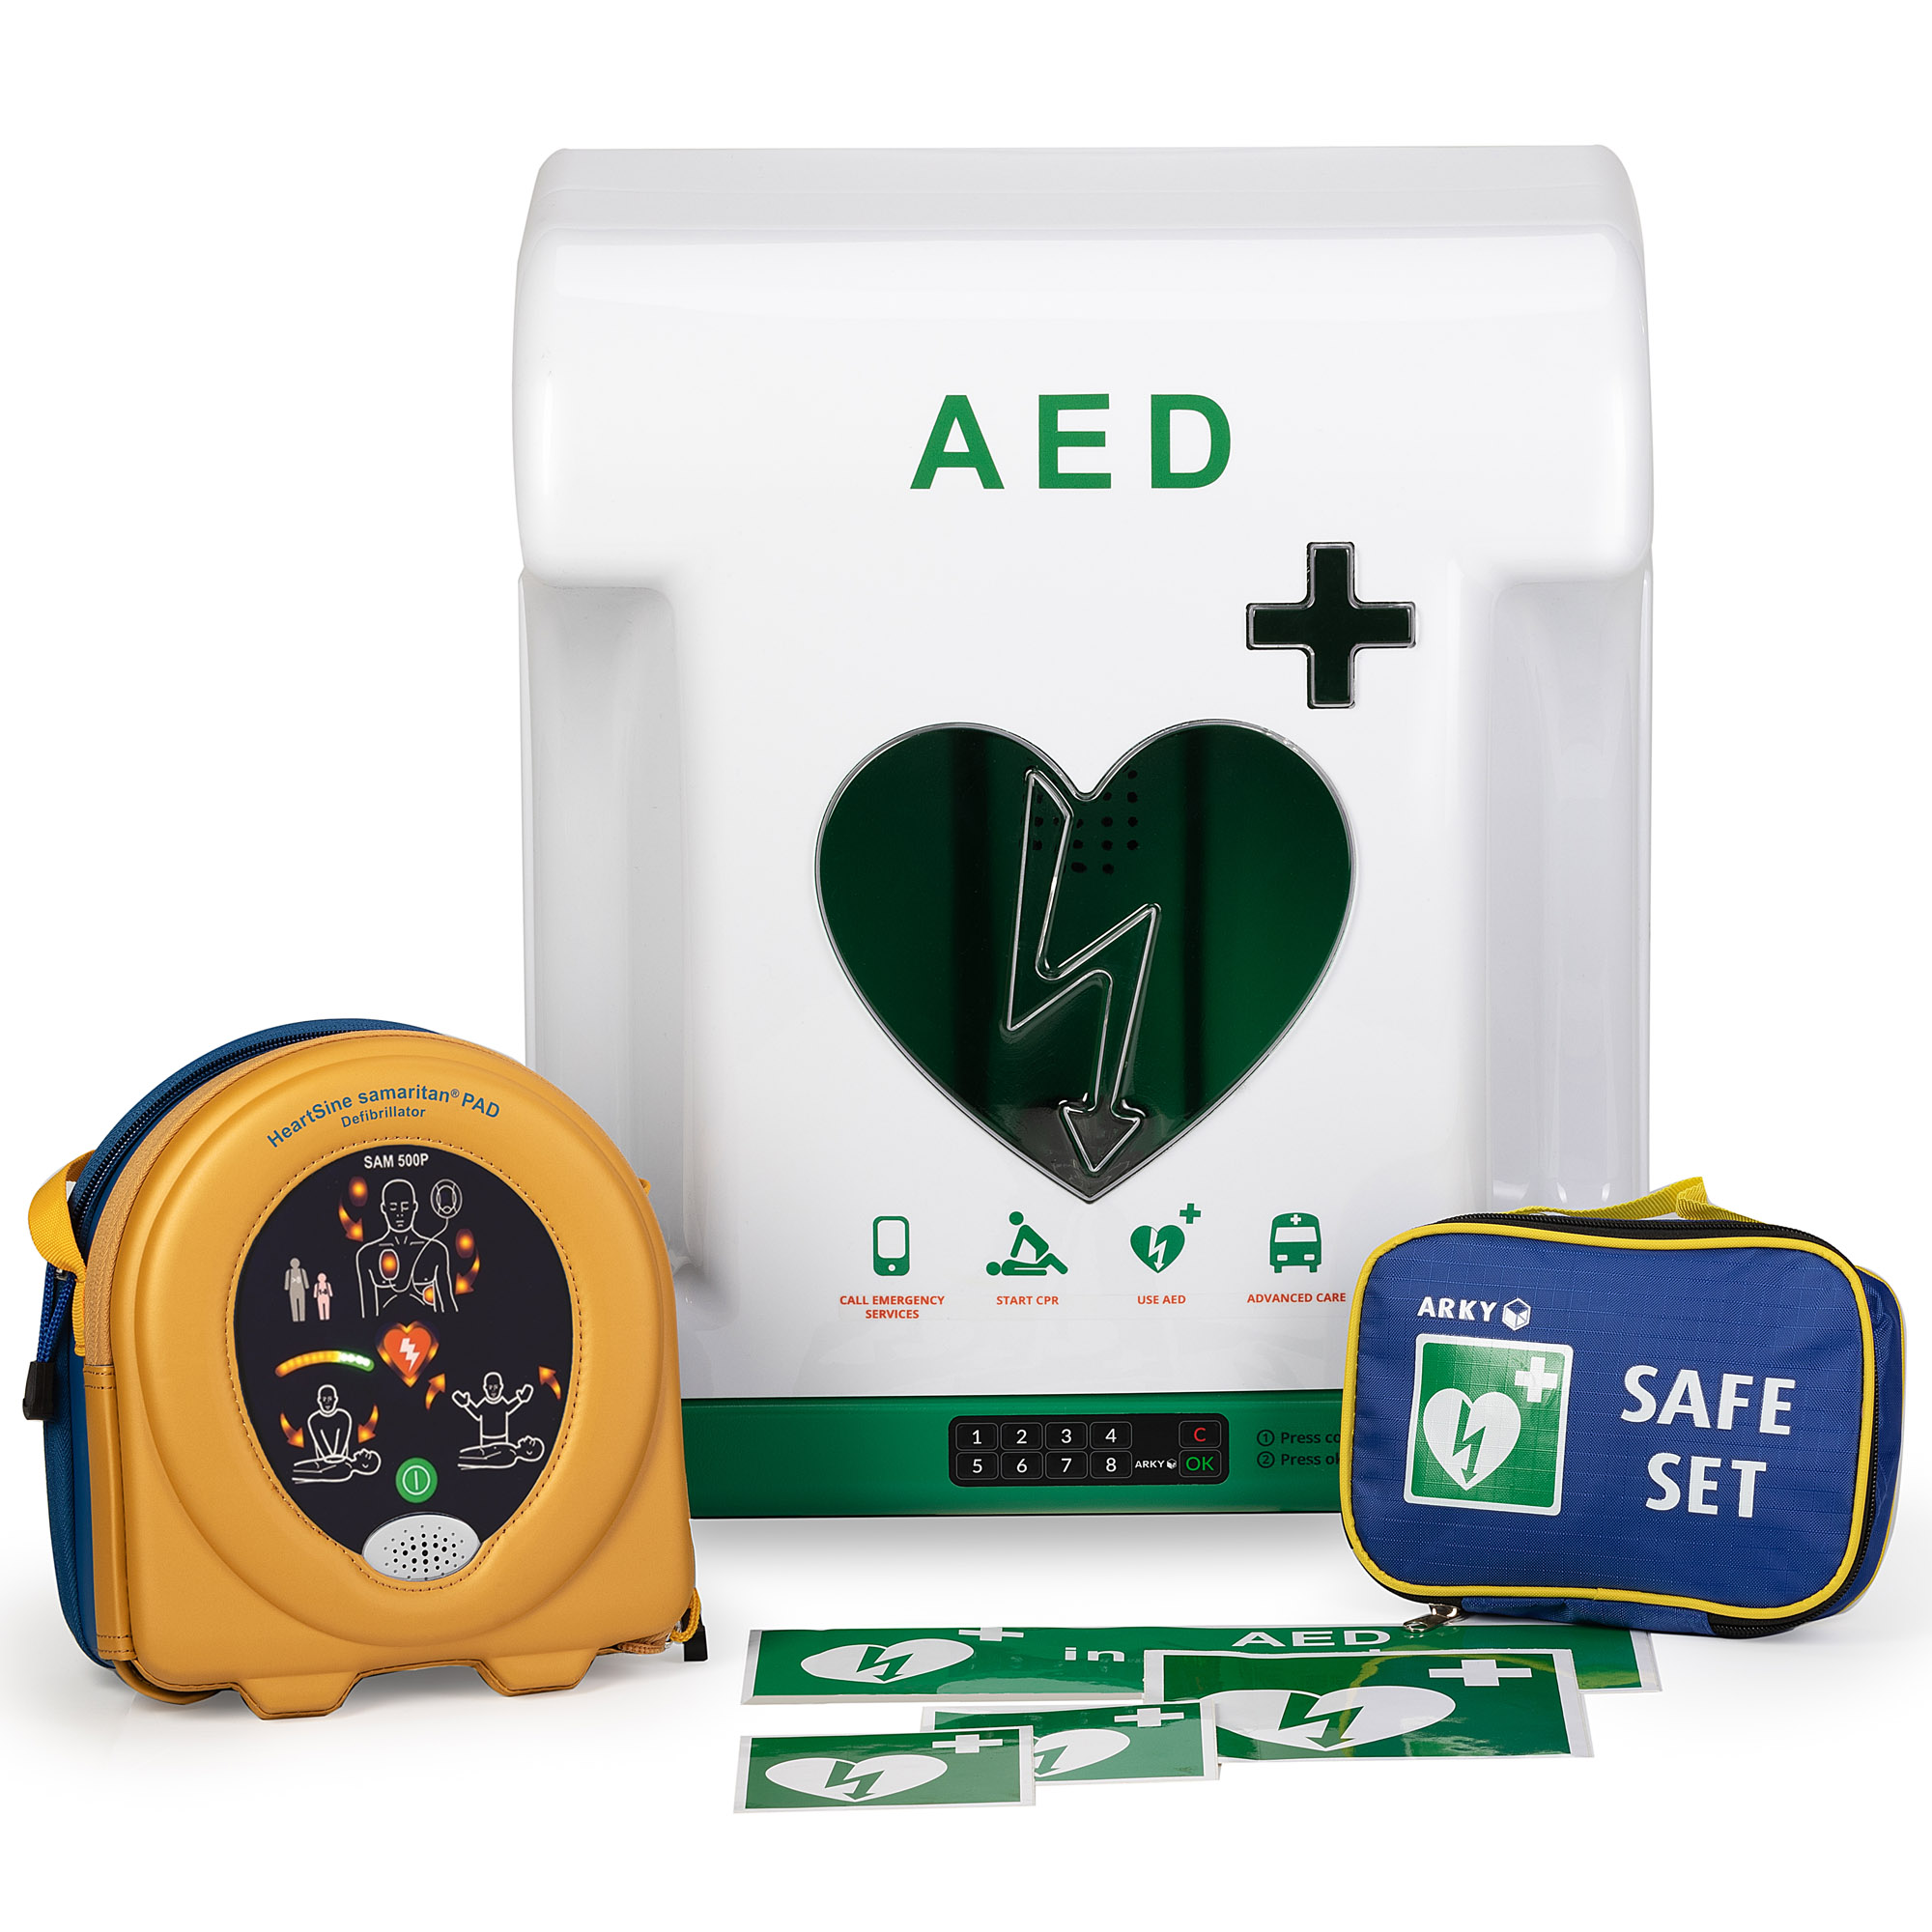 HeartSine Samaritan PAD 500P AED halbautomatischer Defibrillator